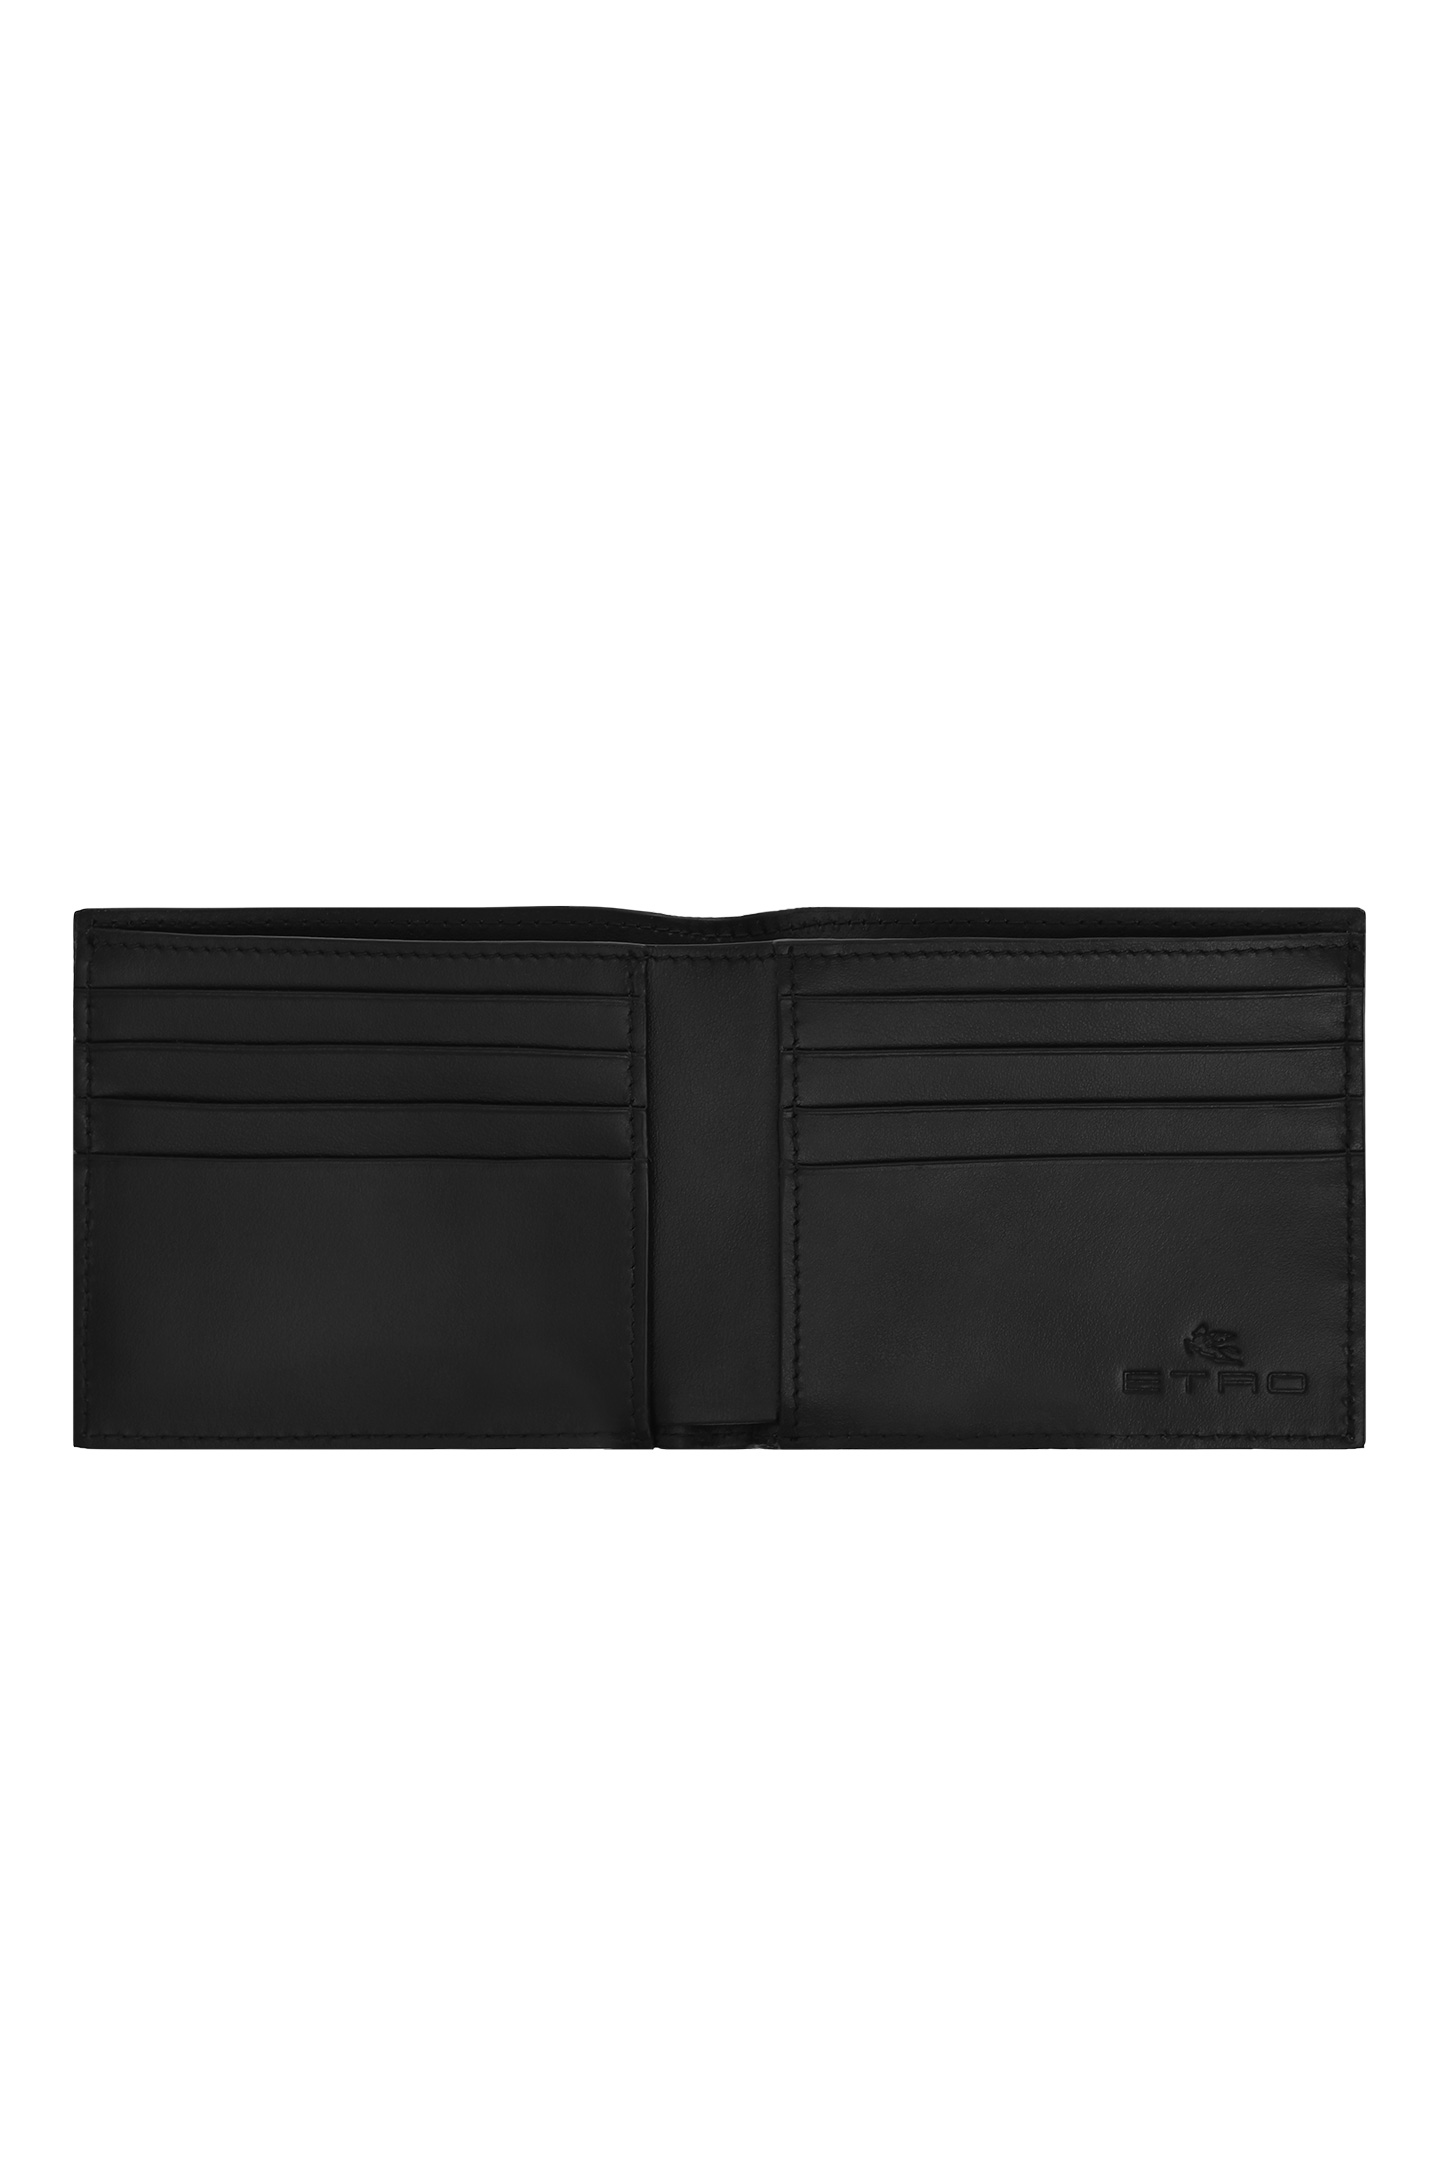 Кожаное портмоне ETRO MP2D0001 AU015, цвет: Черный, Мужской